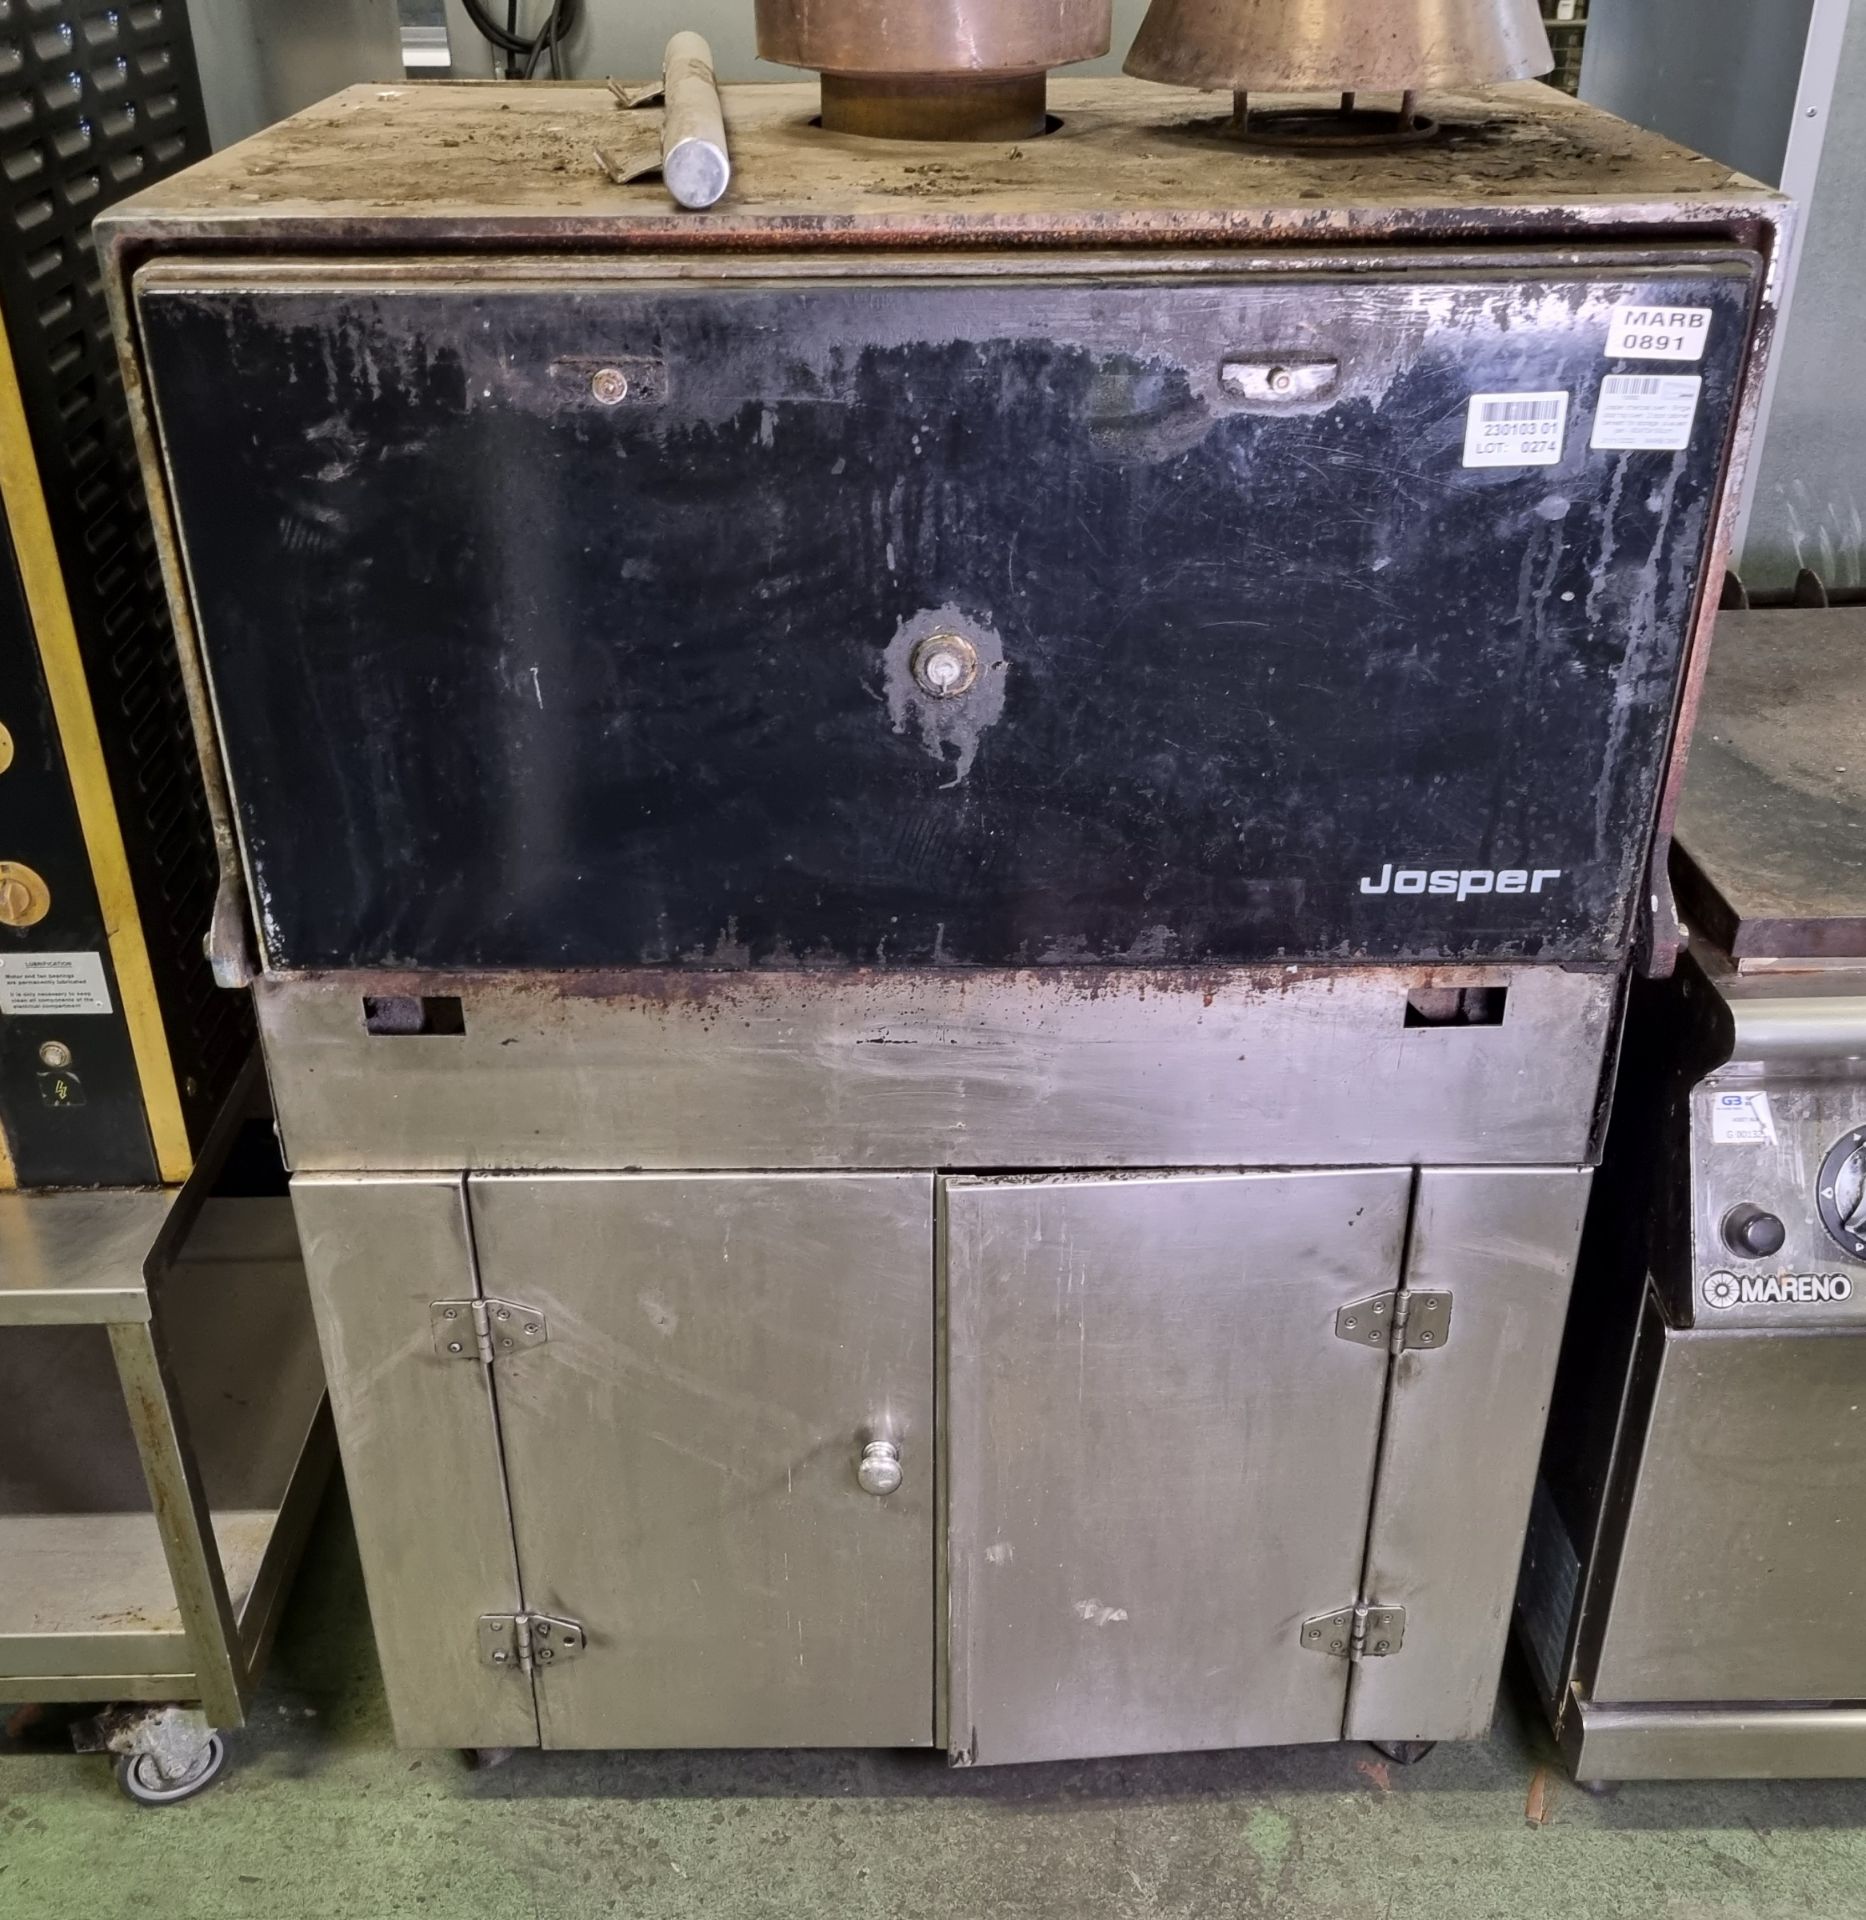 Josper charcoal oven - Single door top oven, 2 door cabinet beneath for storage plus ash pan - Image 2 of 5